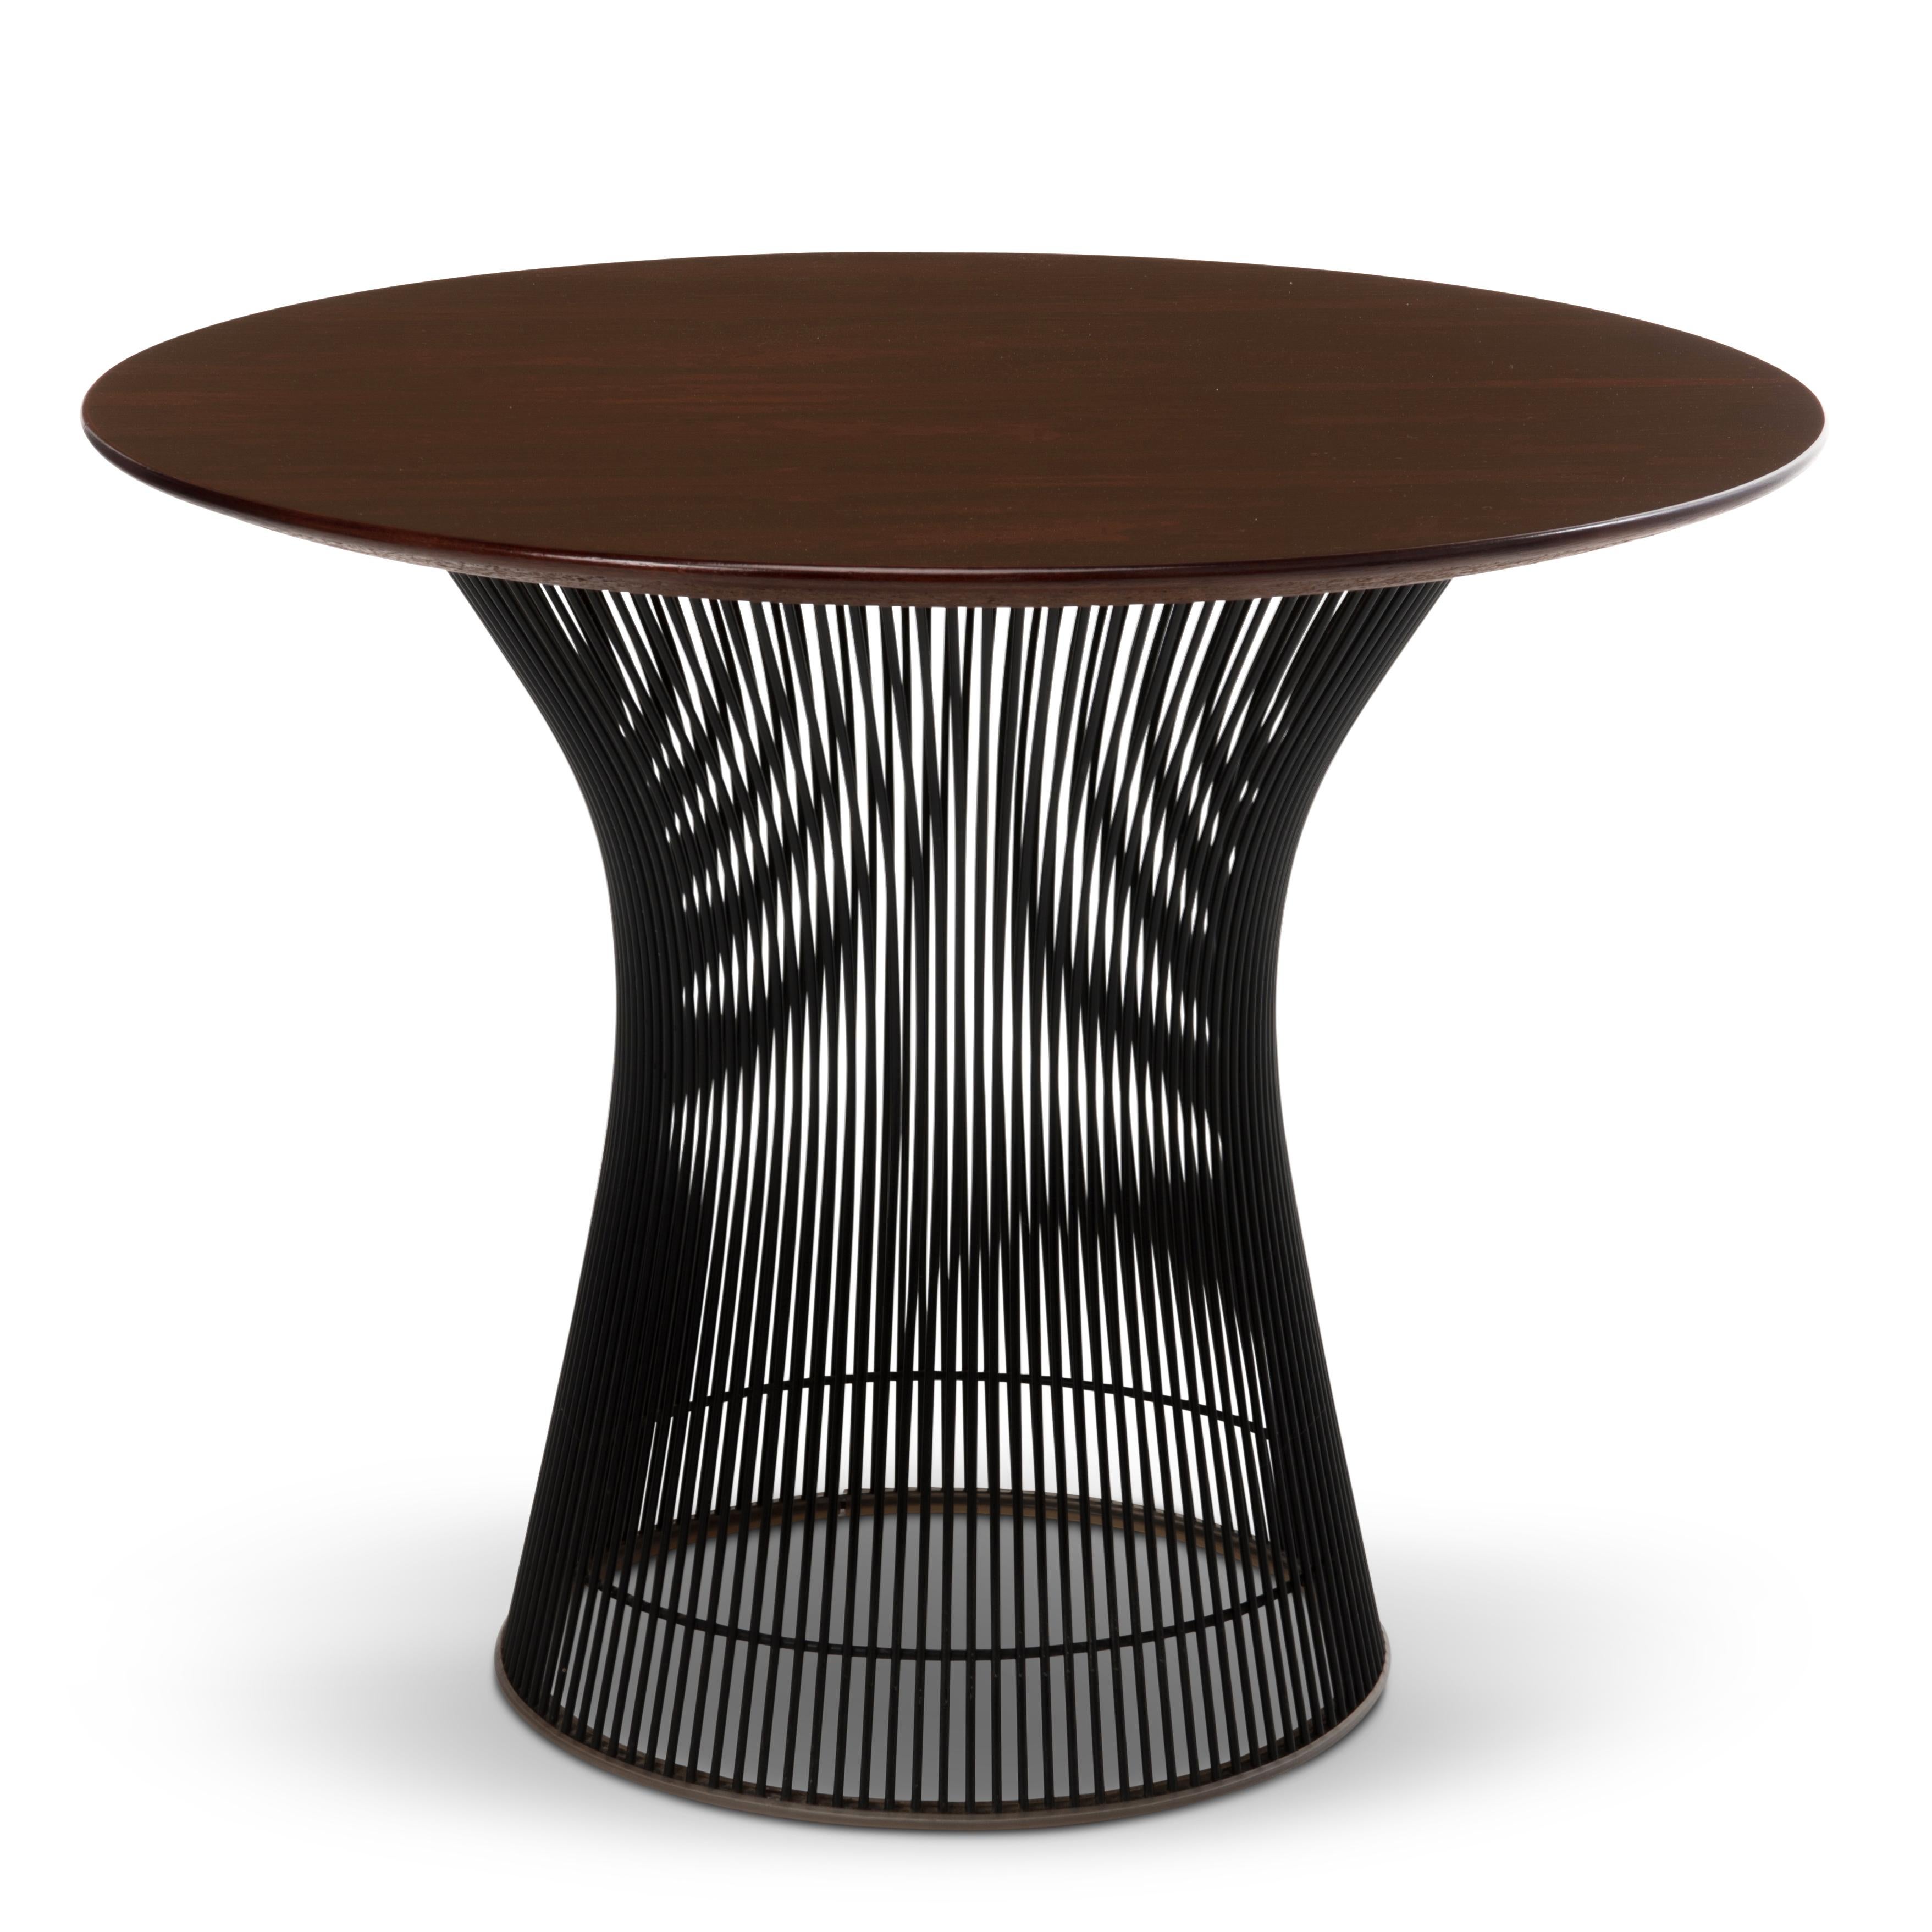 Merveilleuse table d'appoint en bois de rose et base noire des années 1970, conçue par Warren Platner pour Knoll Associates, provenant de la succession d'un employé de Knoll à East Greenville, PA. 

La dernière photographie montre cette table à